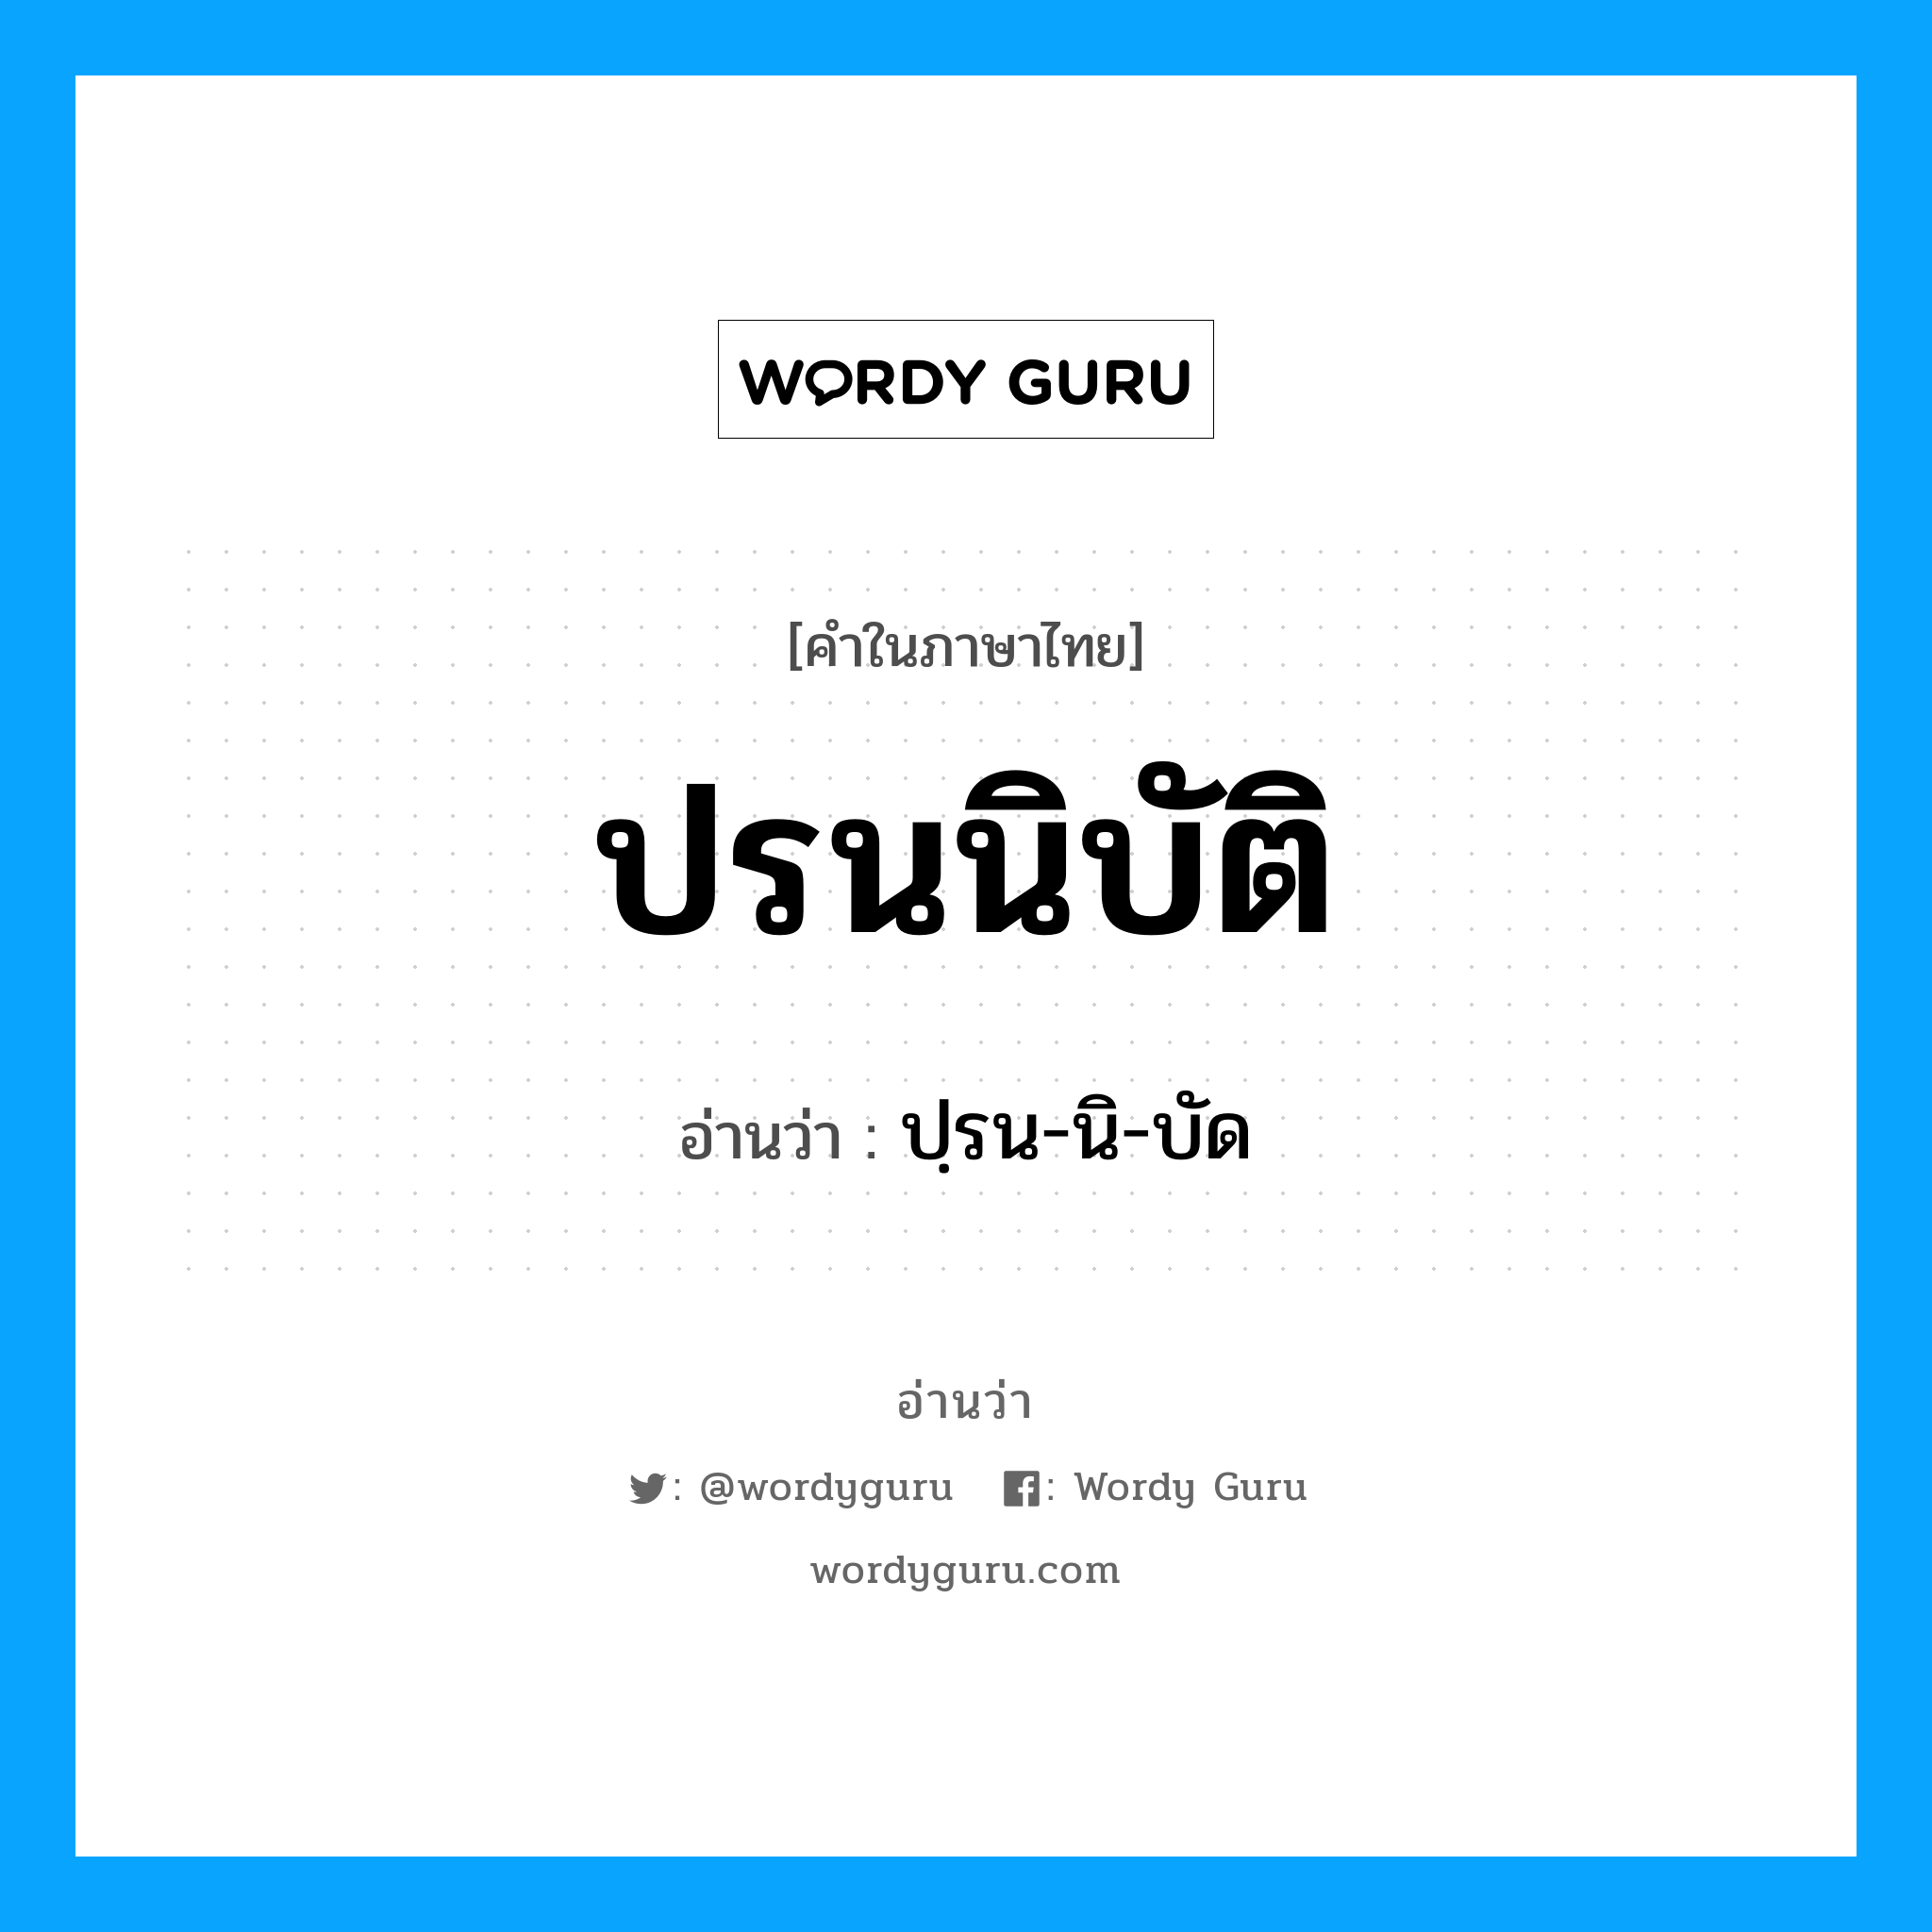 ปฺรน-นิ-บัด เป็นคำอ่านของคำไหน?, คำในภาษาไทย ปฺรน-นิ-บัด อ่านว่า ปรนนิบัติ